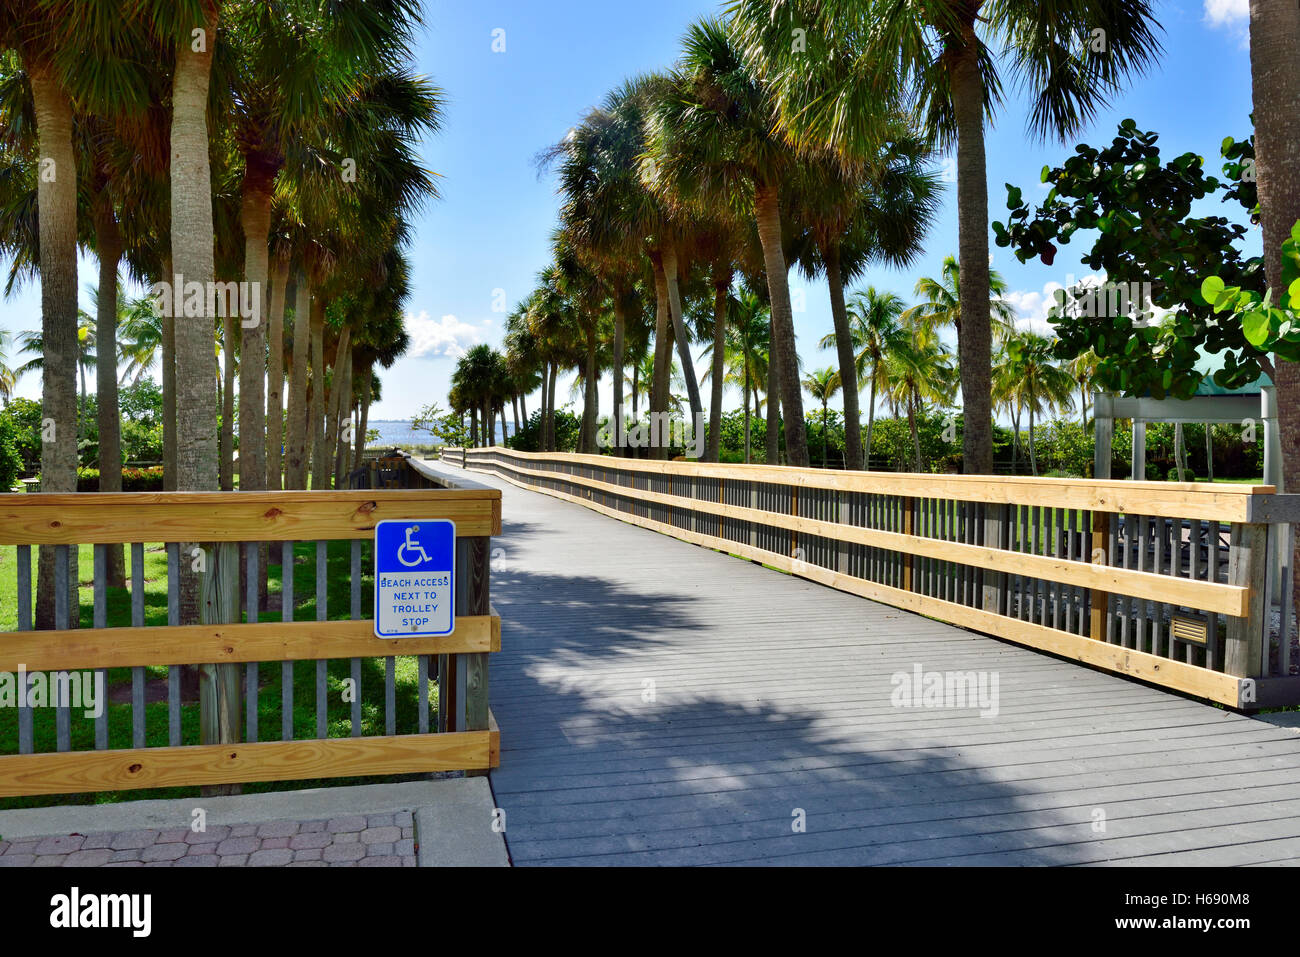 Rampe en bois de ronde qui permet l'accès en fauteuil roulant à Fort Myers Beach, Floride Banque D'Images